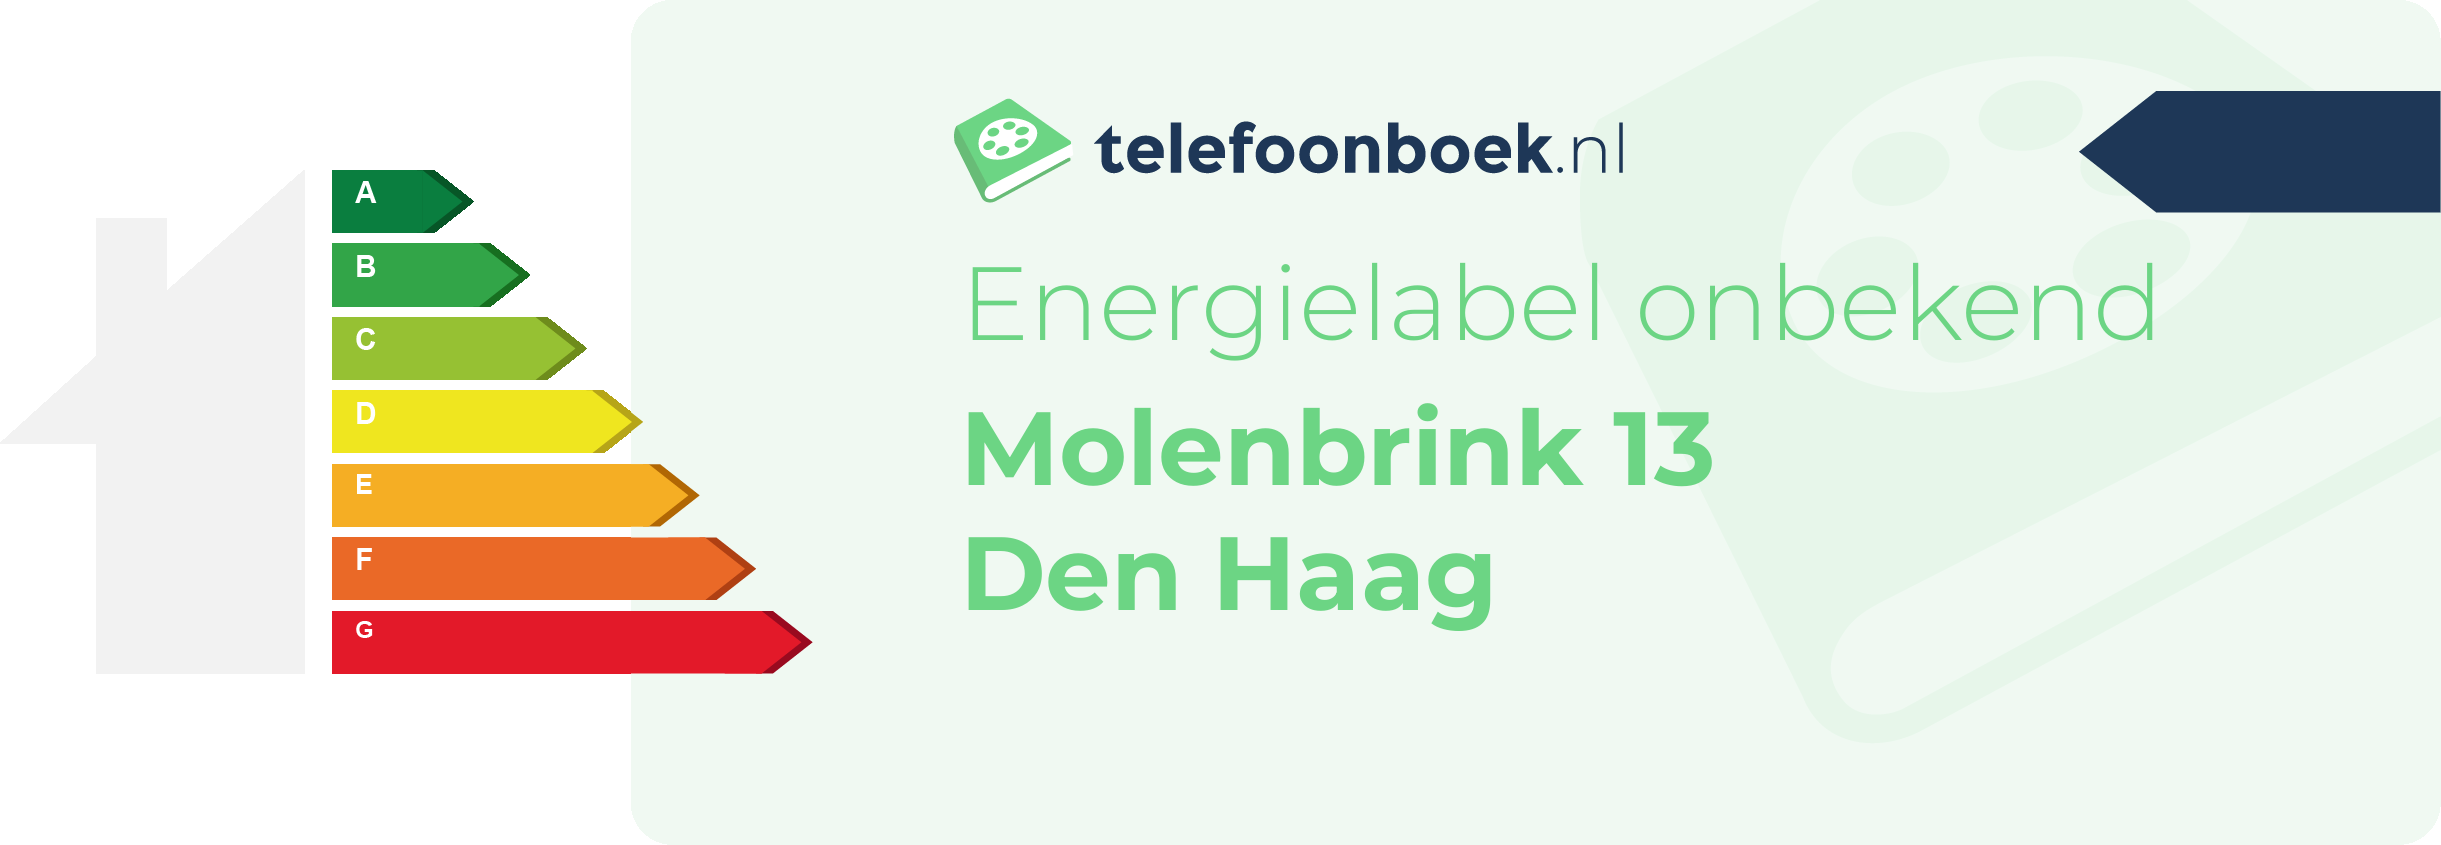 Energielabel Molenbrink 13 Den Haag